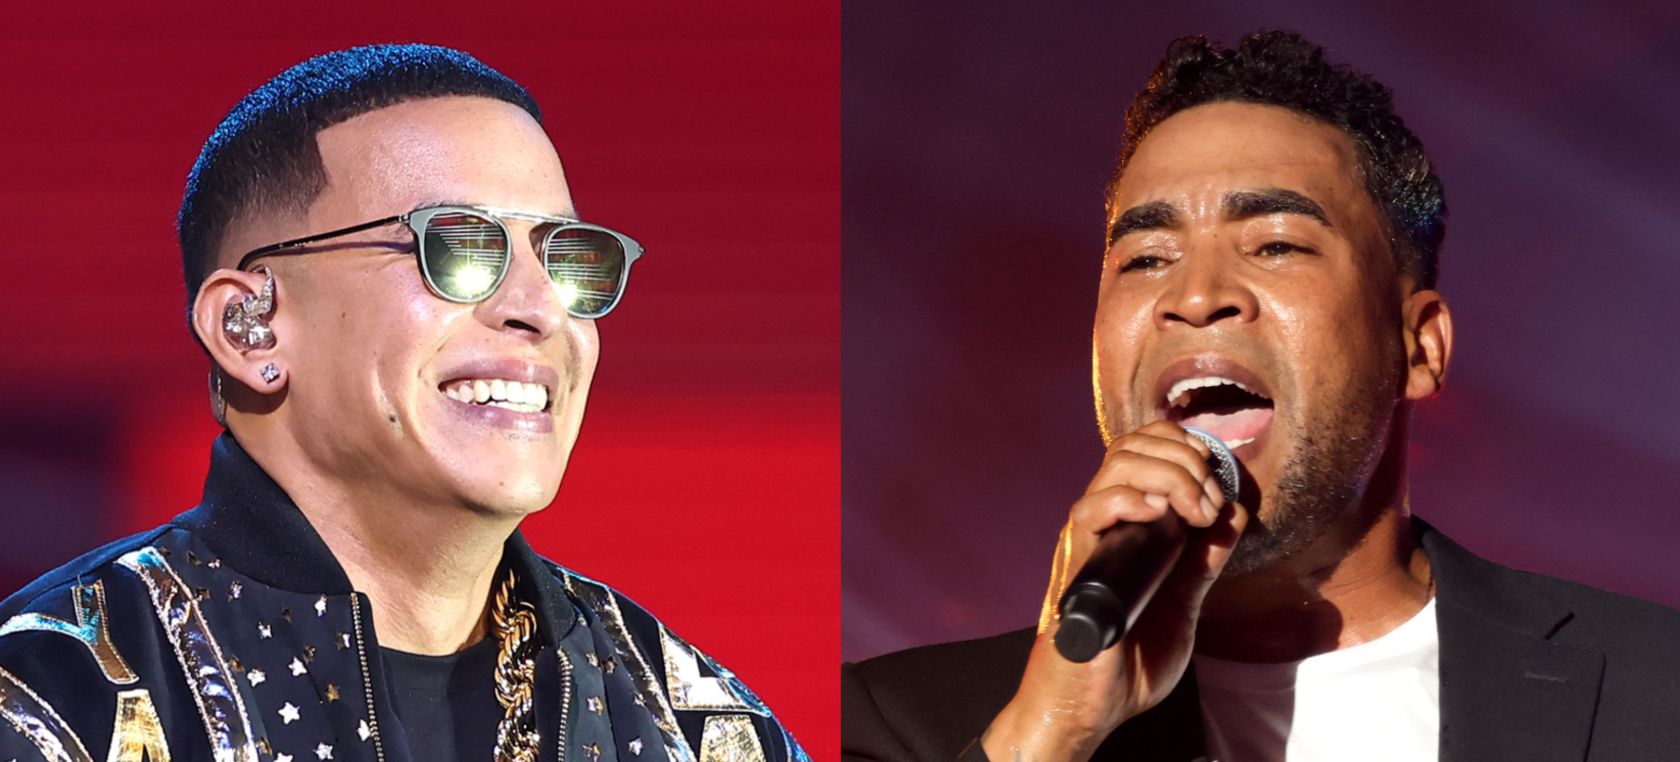 “No hay manera de justificarlo”: Daddy Yankee rompe el silencio y responde a Don Omar